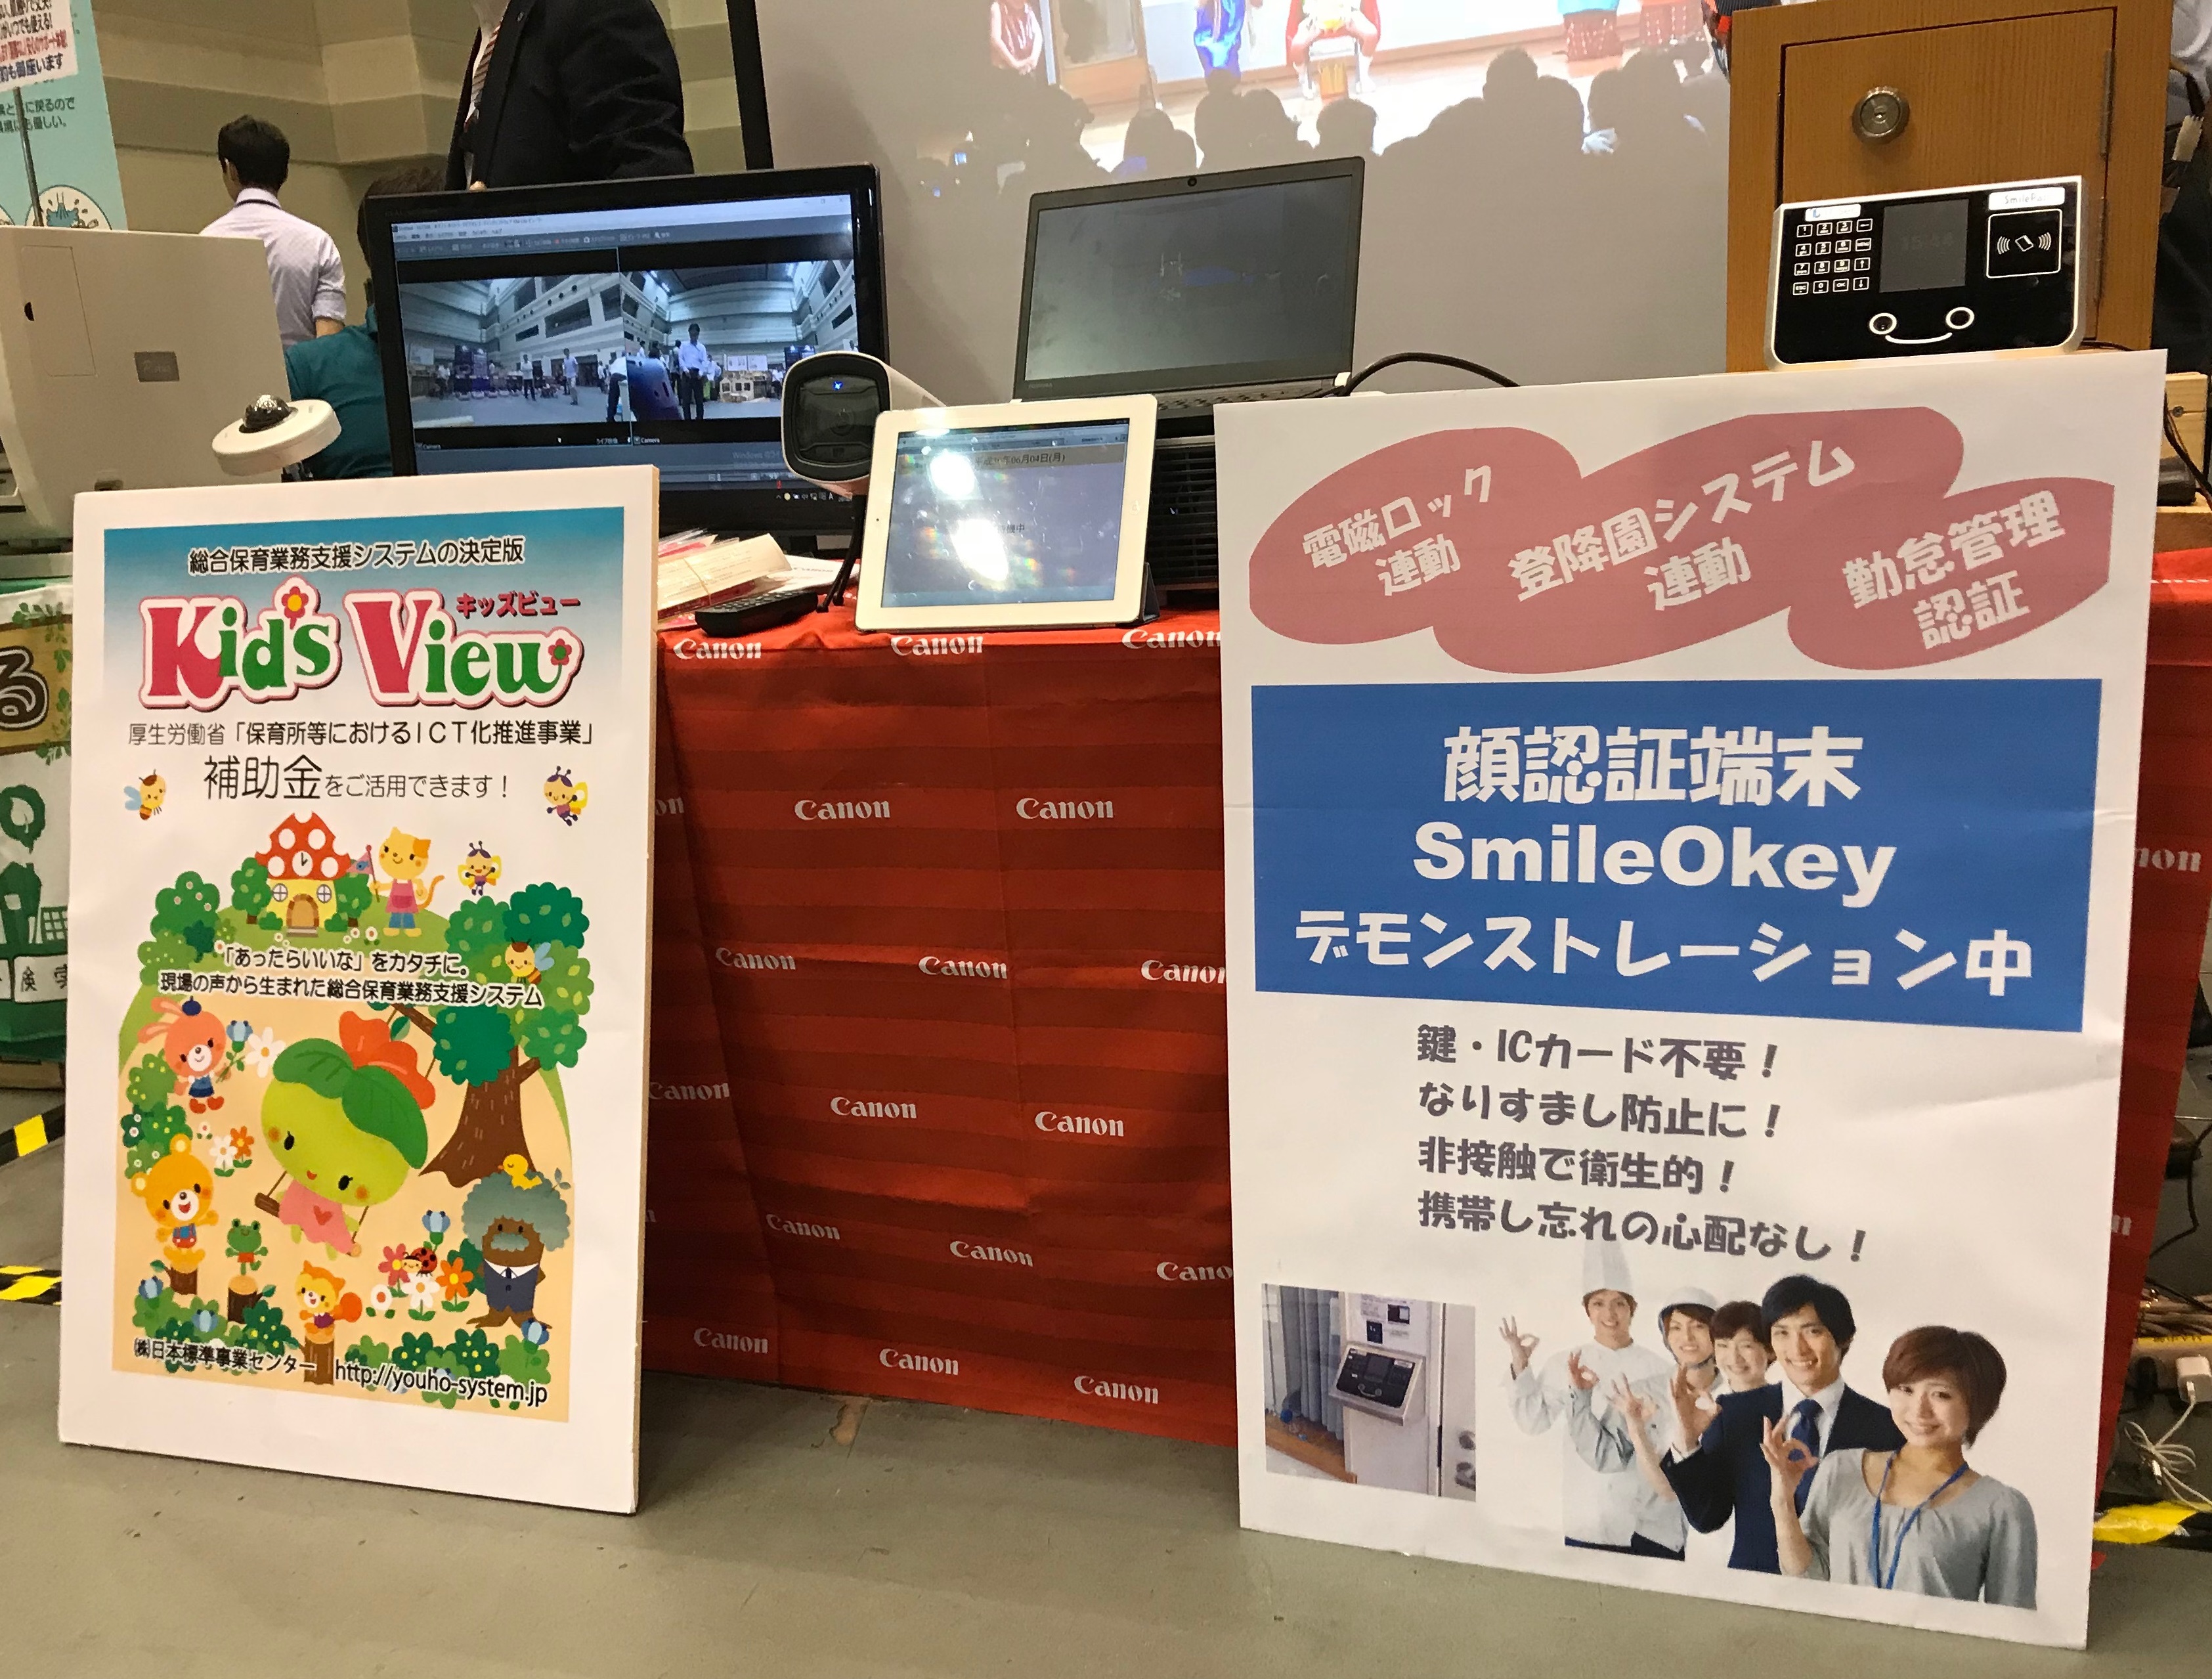 第61回全国私立保育園研究大会にて㈱日本標準様とキヤノンマーケティングジャパン㈱様のブースに顔認証システム「SmileOkay」を出展して頂いております